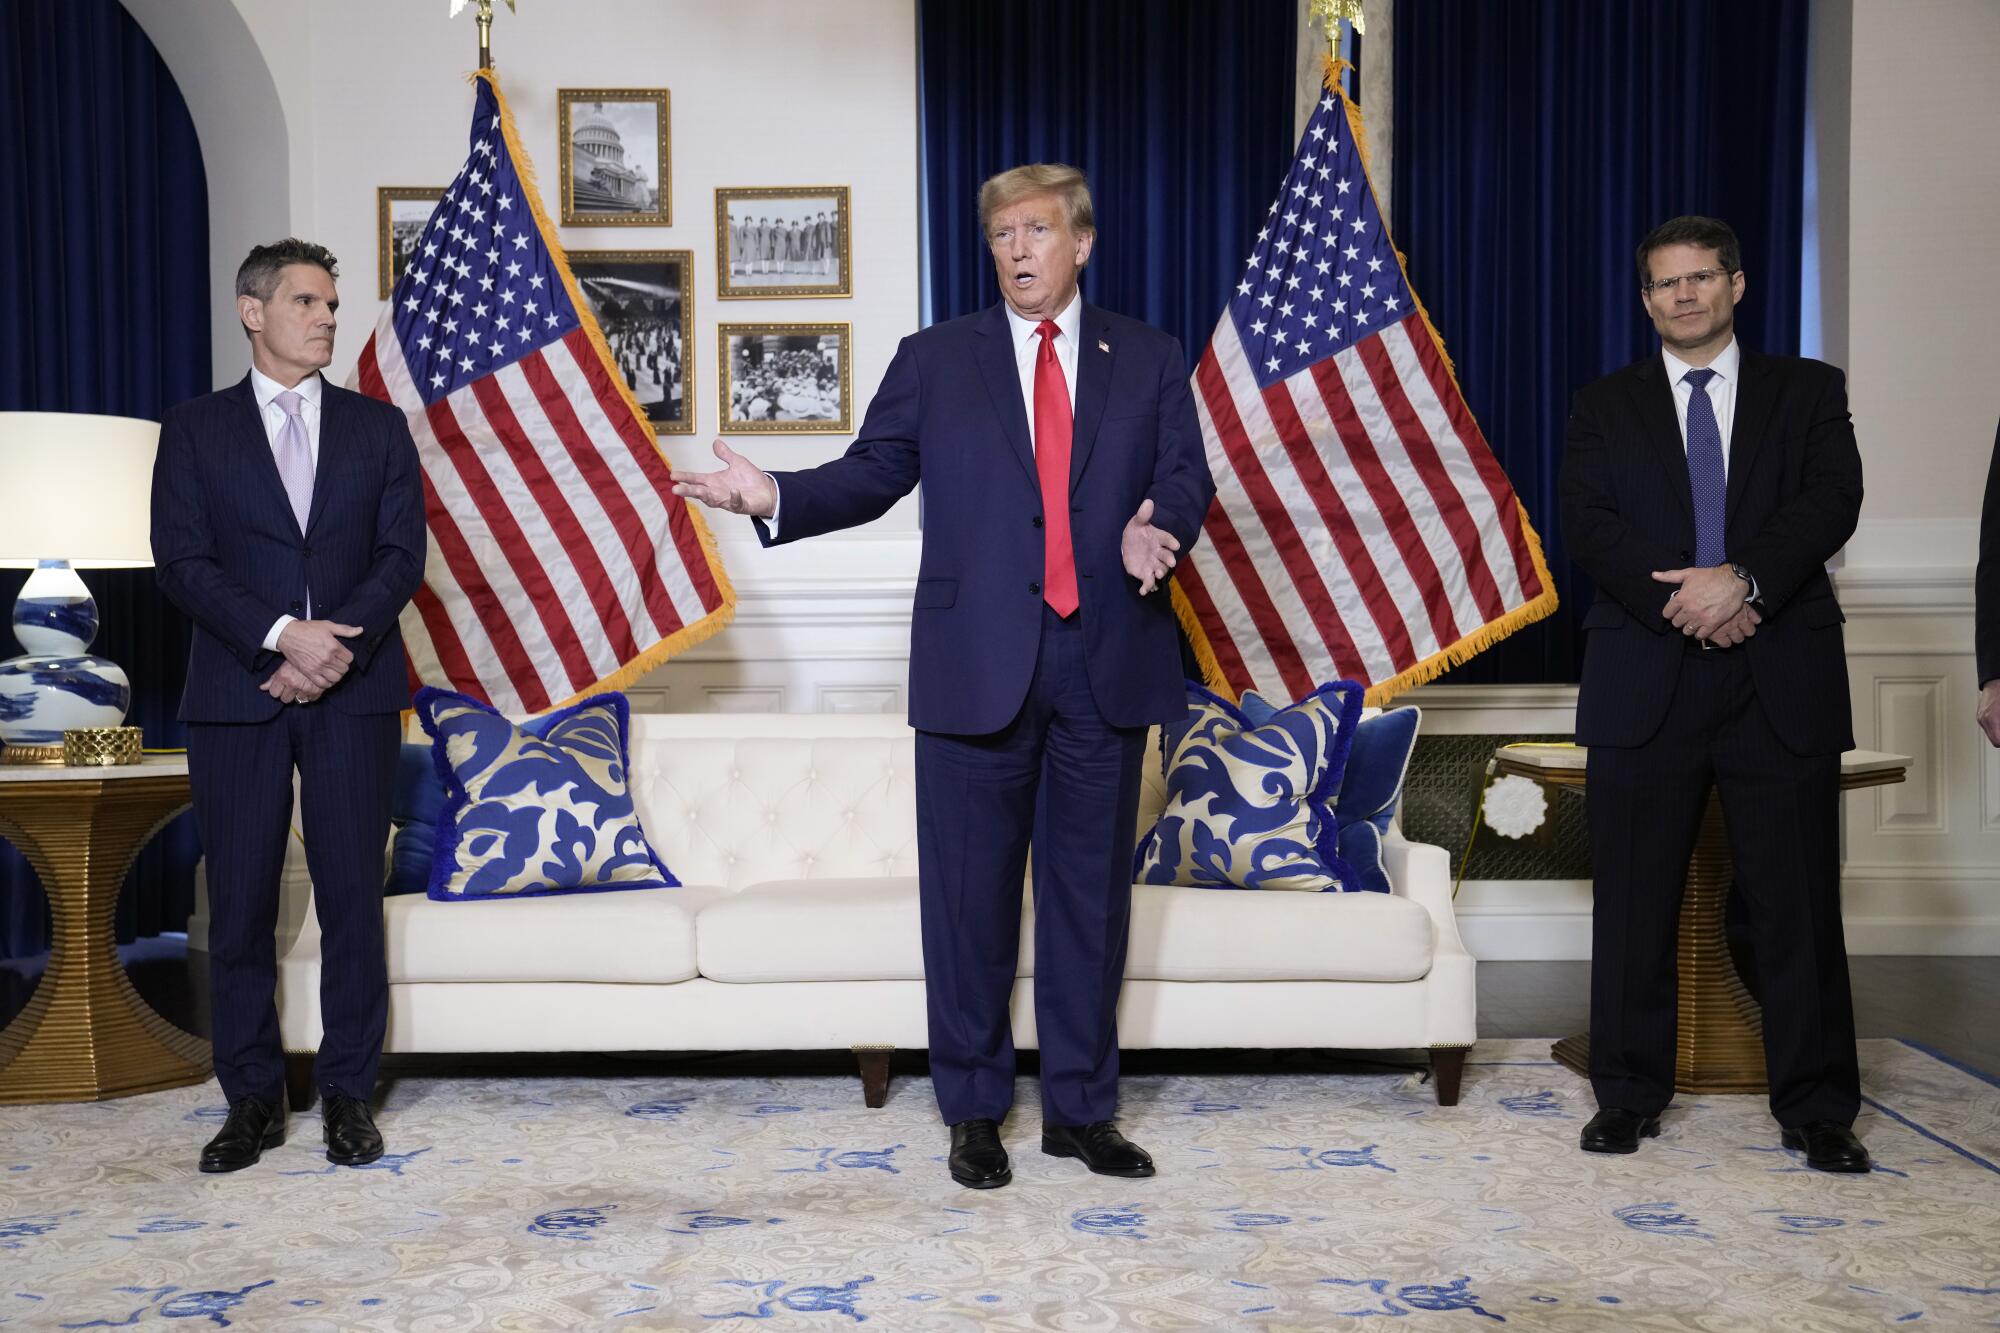 O ex-presidente Trump, ladeado por dois homens de terno, fala em uma sala branca com detalhes em azul e duas bandeiras dos EUA